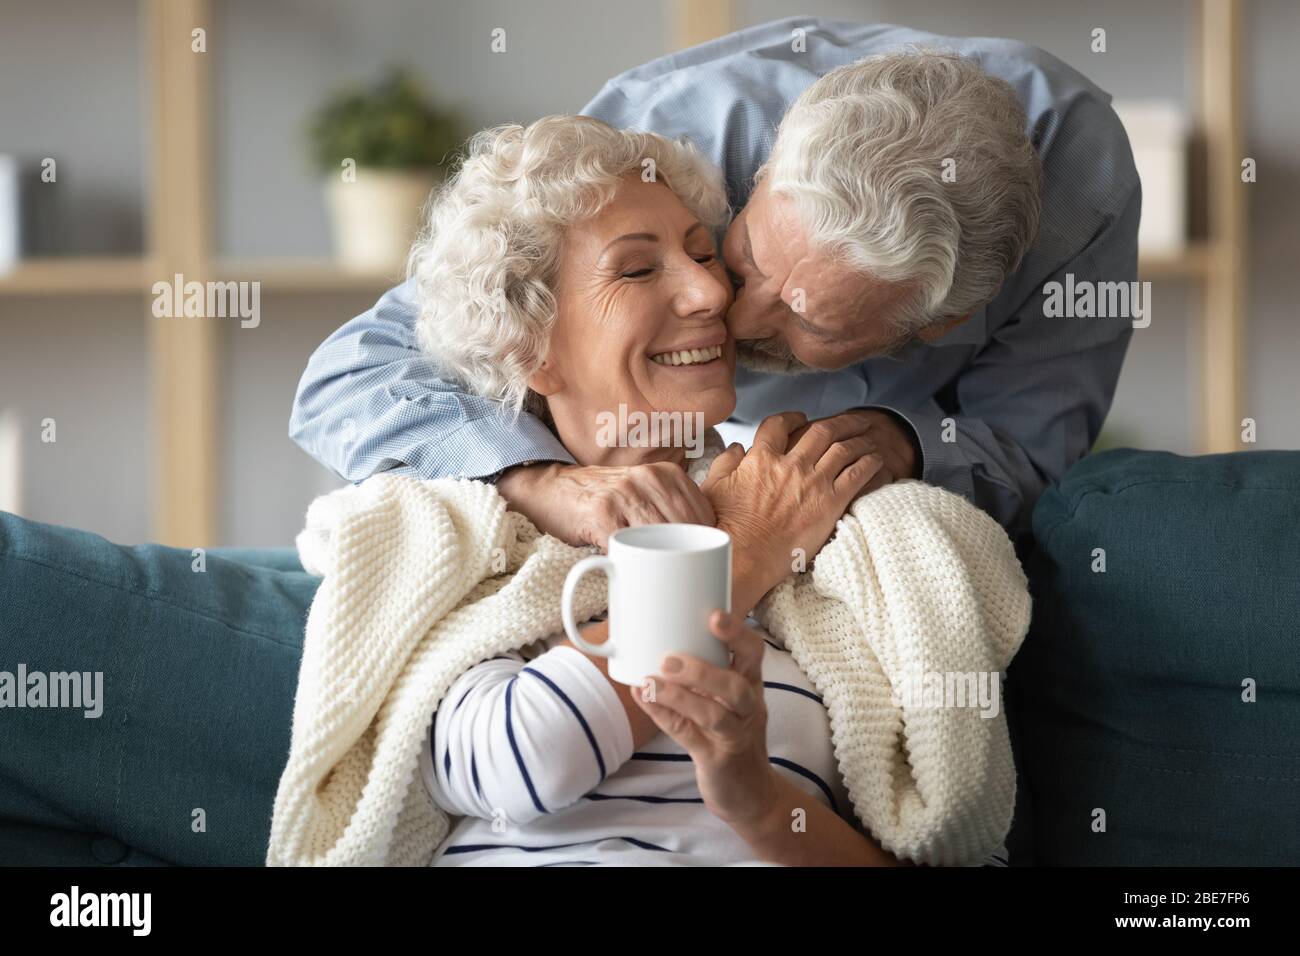 Un mari affectueux qui embrasse une femme souriante sur la joue Banque D'Images